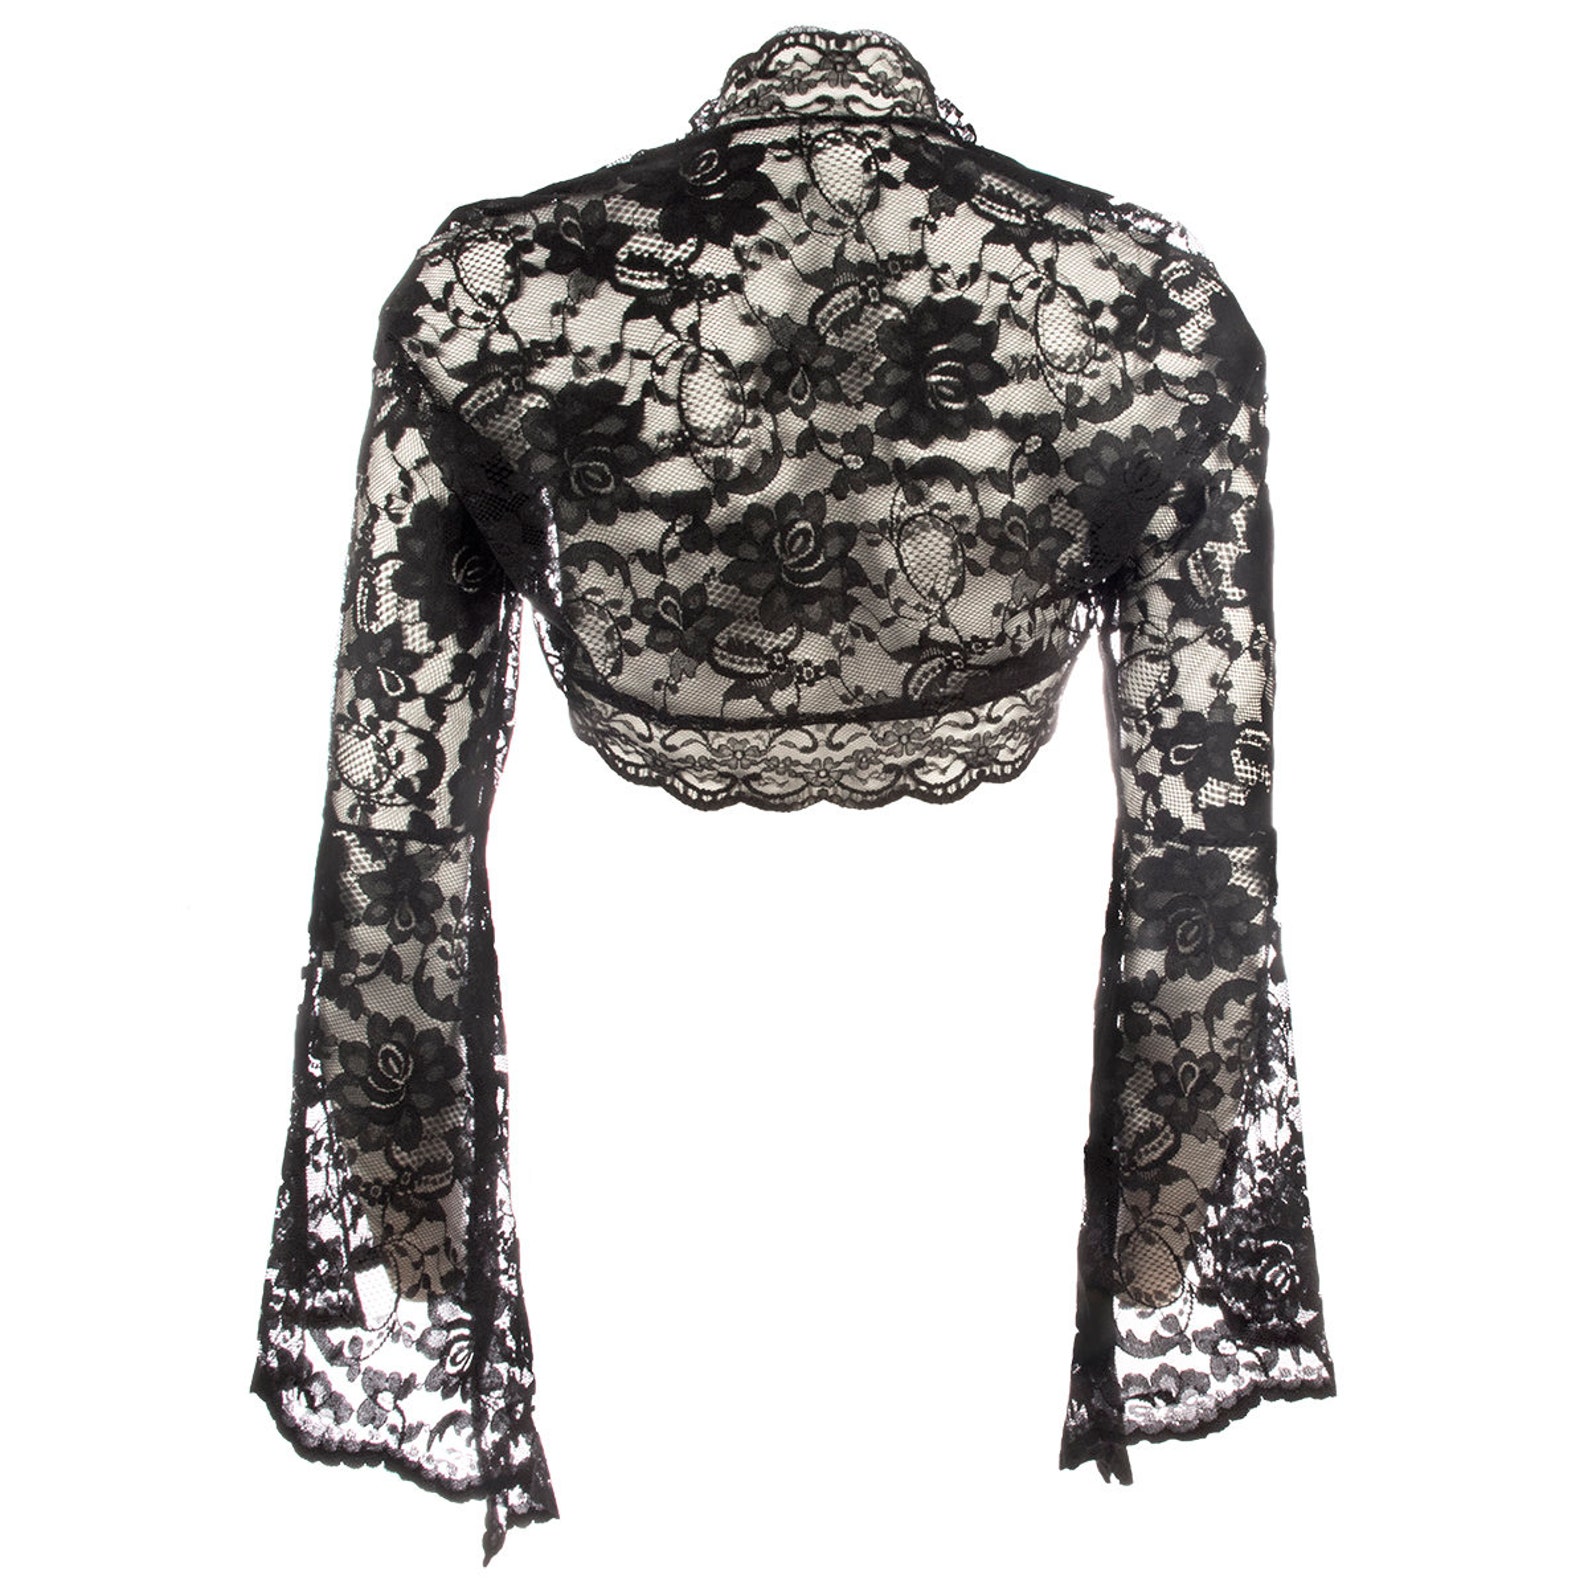 Ladies Black Lace Long Bell Sleeve Bolero Shrug Jacket Sizes | Etsy